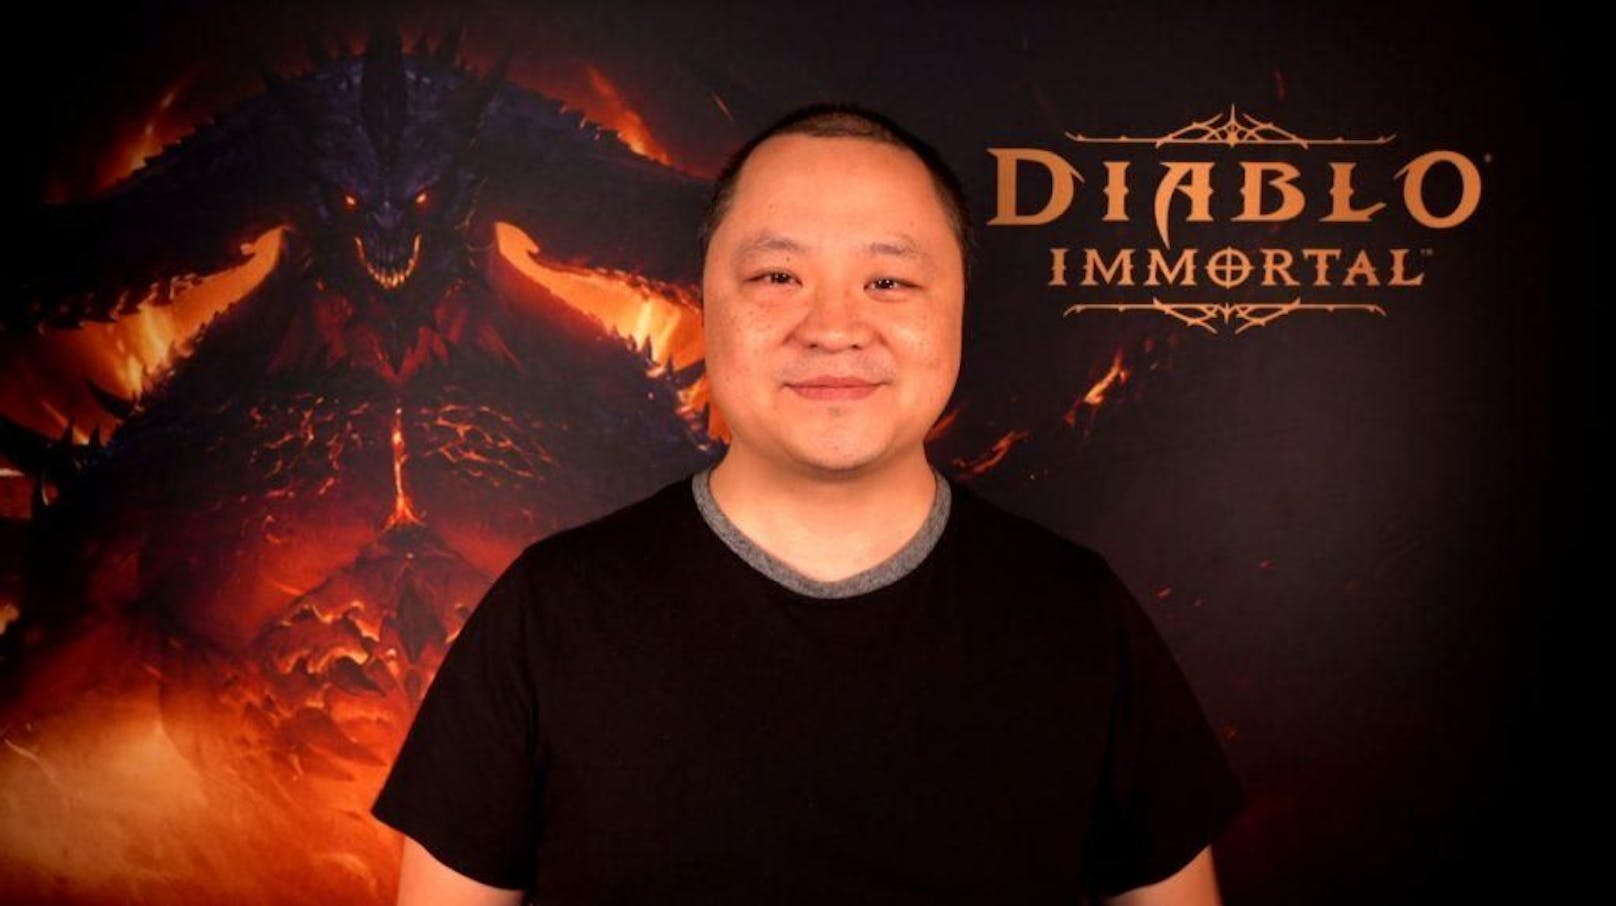 Direktor Wyatt Cheng hat auf Twitter einen Shitstorm ausgelöst. So habe er in Interviews immer offen kommuniziert, wie das Spiel monetarisiert werde.